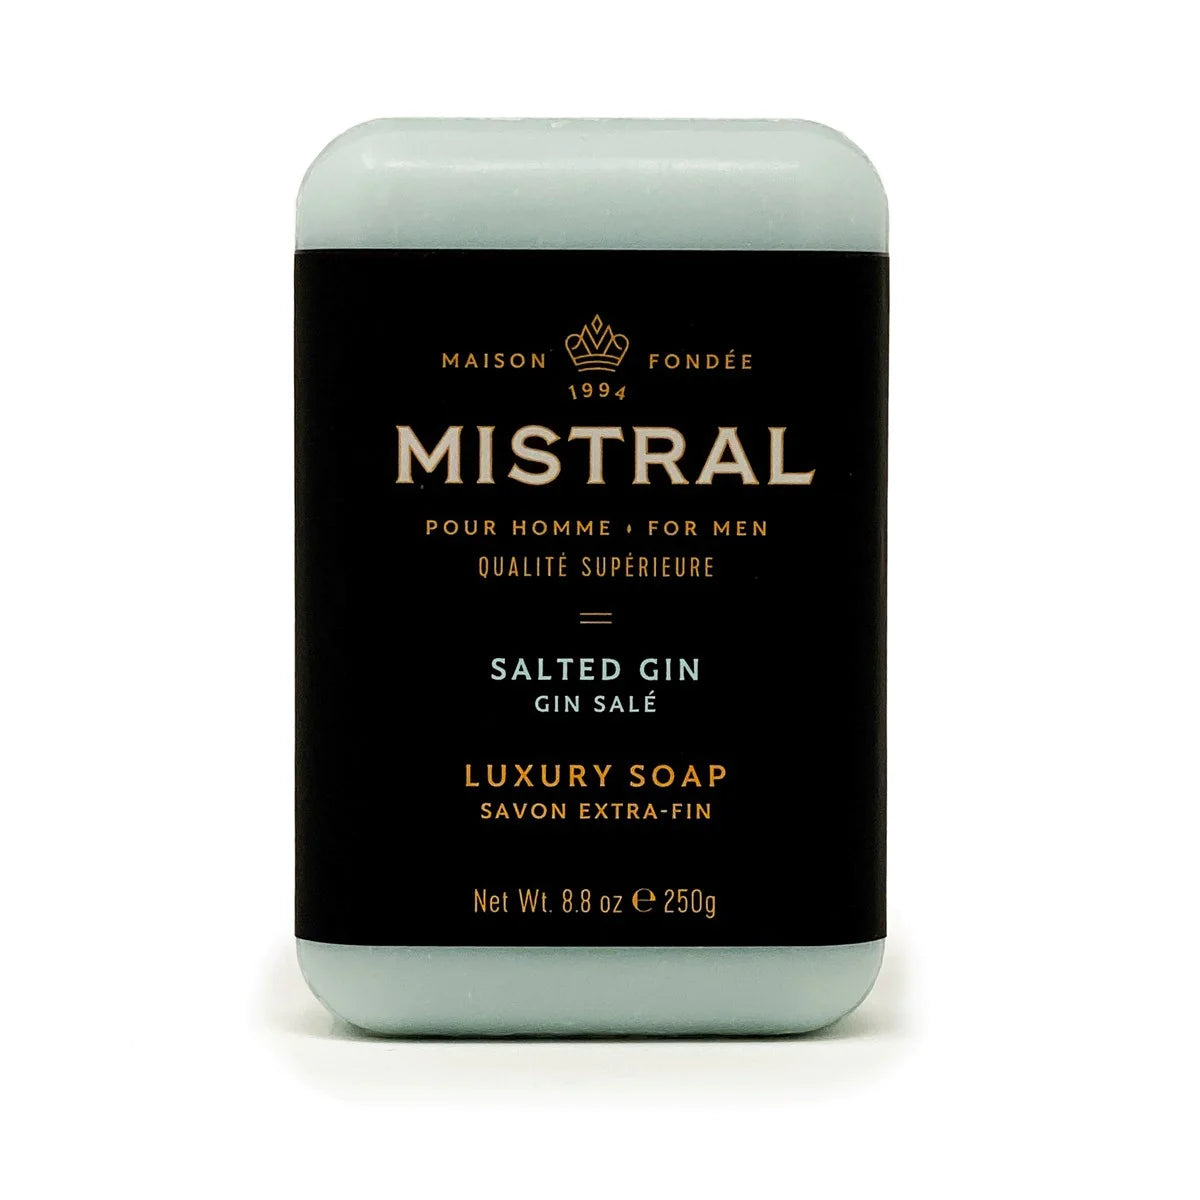 Mistral SALTED GIN BAR SOAP - Men's